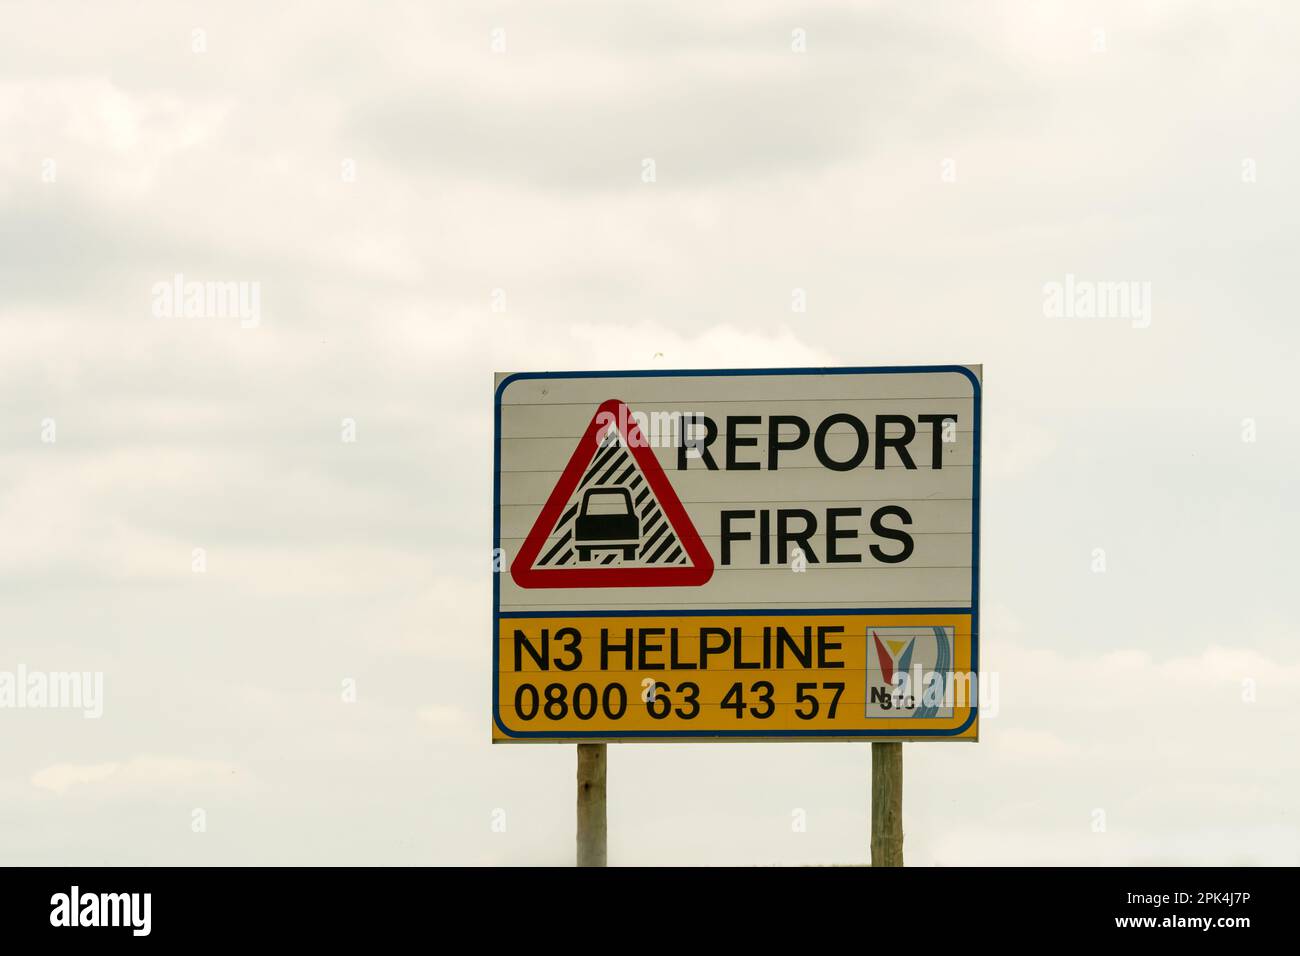 Straßenschild oder Beschilderung zur Meldung von Bränden und eine Helpline-Telefonnummer für die Autobahn N3 in Südafrika Konzept Öffentliche Sensibilisierung Stockfoto